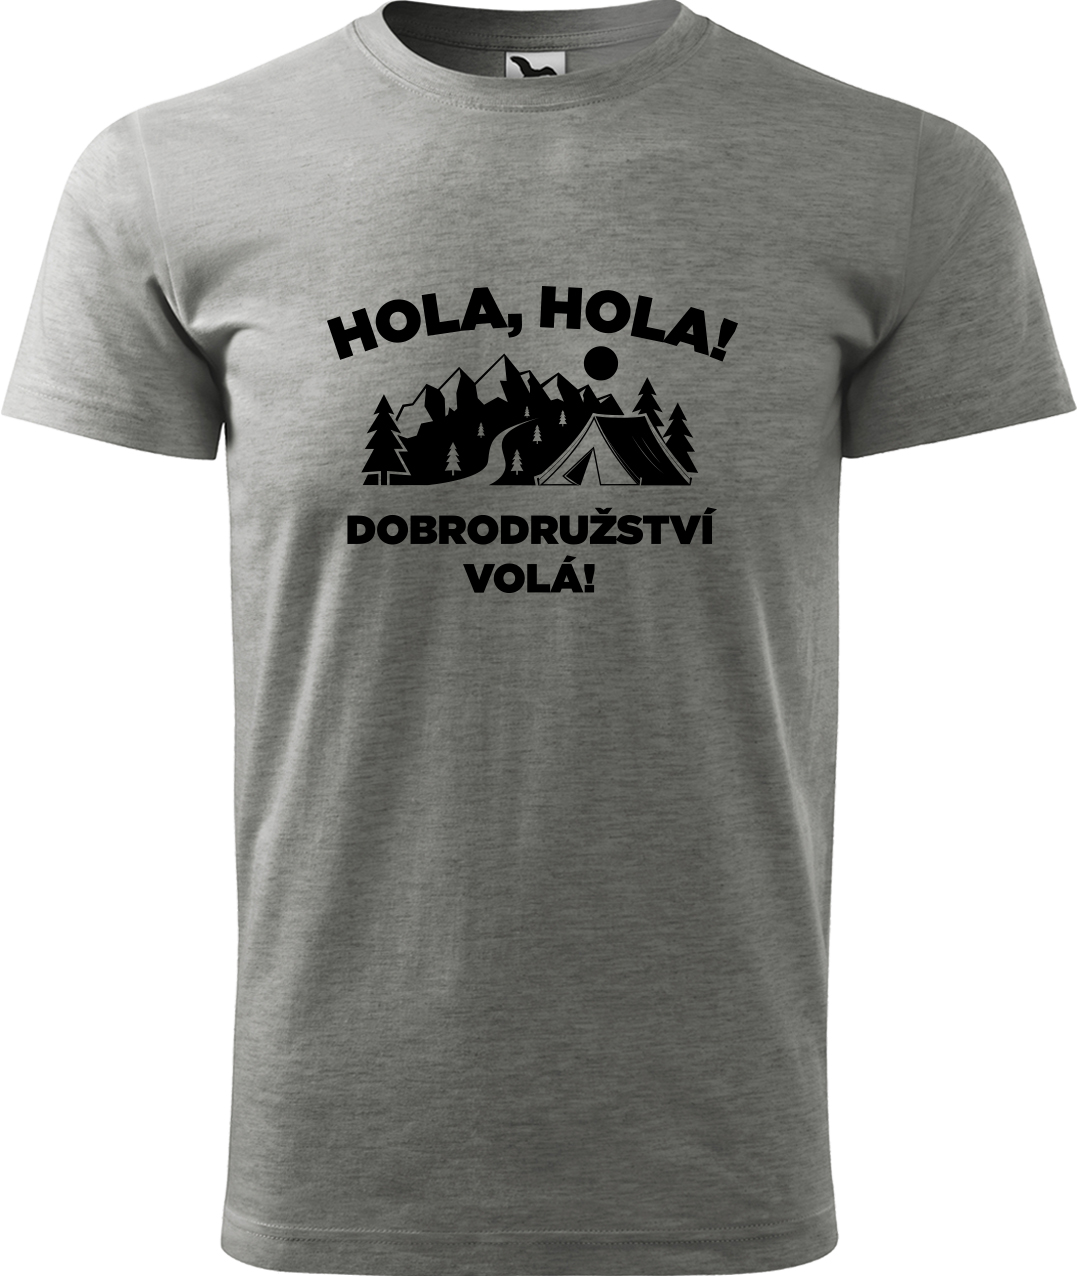 Pánské cestovatelské tričko - Hola hola! Dobrodružství volá! Velikost: L, Barva: Tmavě šedý melír (12), Střih: pánský